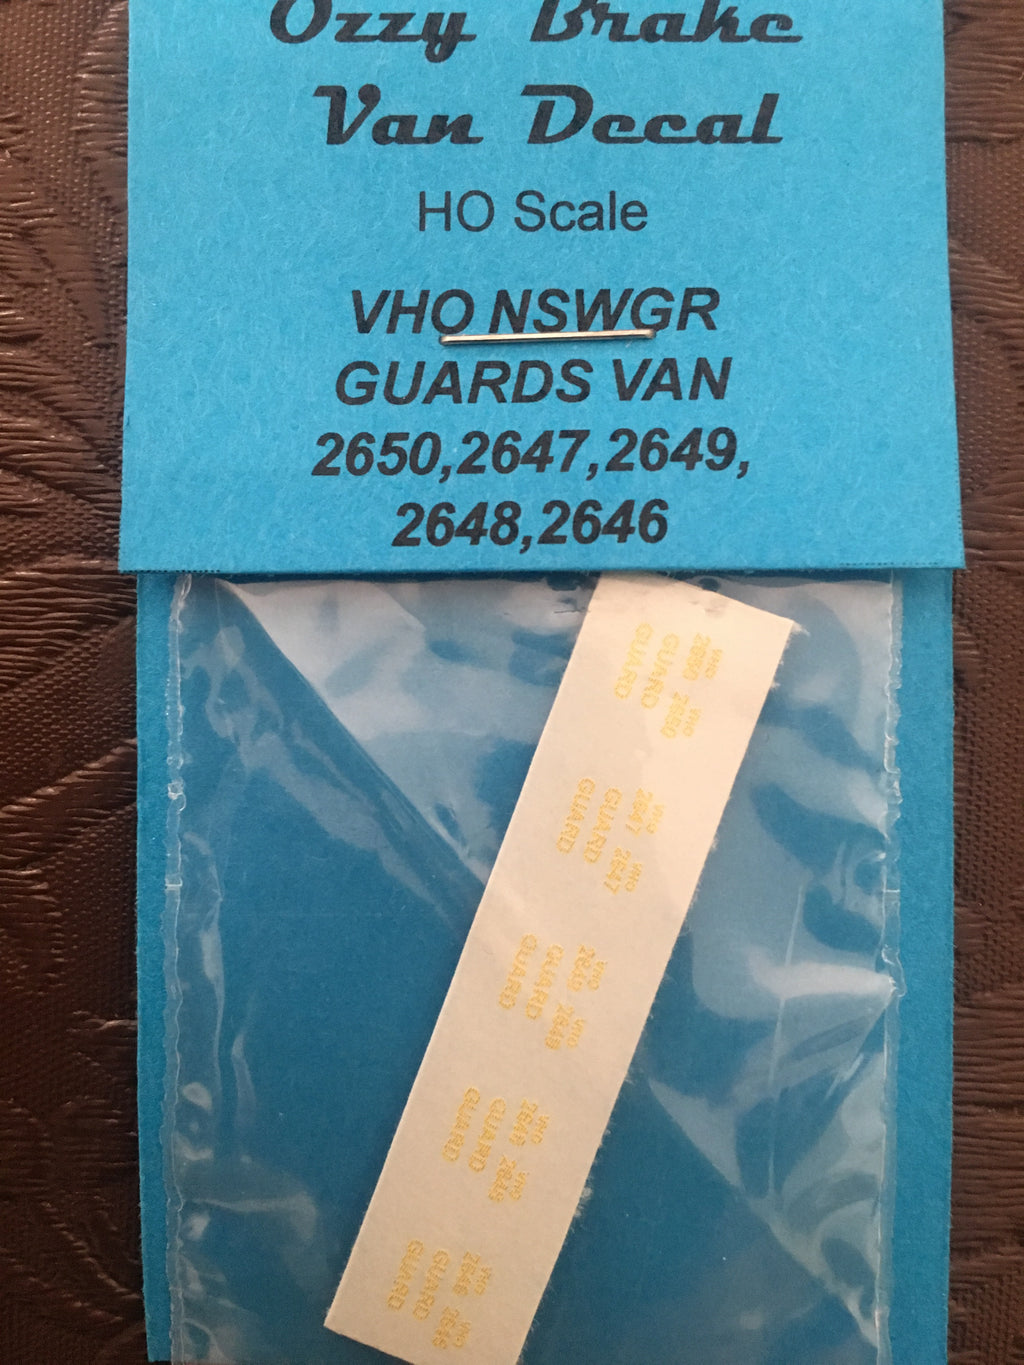 Ozzy Decals Brake Van : VHO NSWGR Guards Van 2650,2647,2649,2648,2646